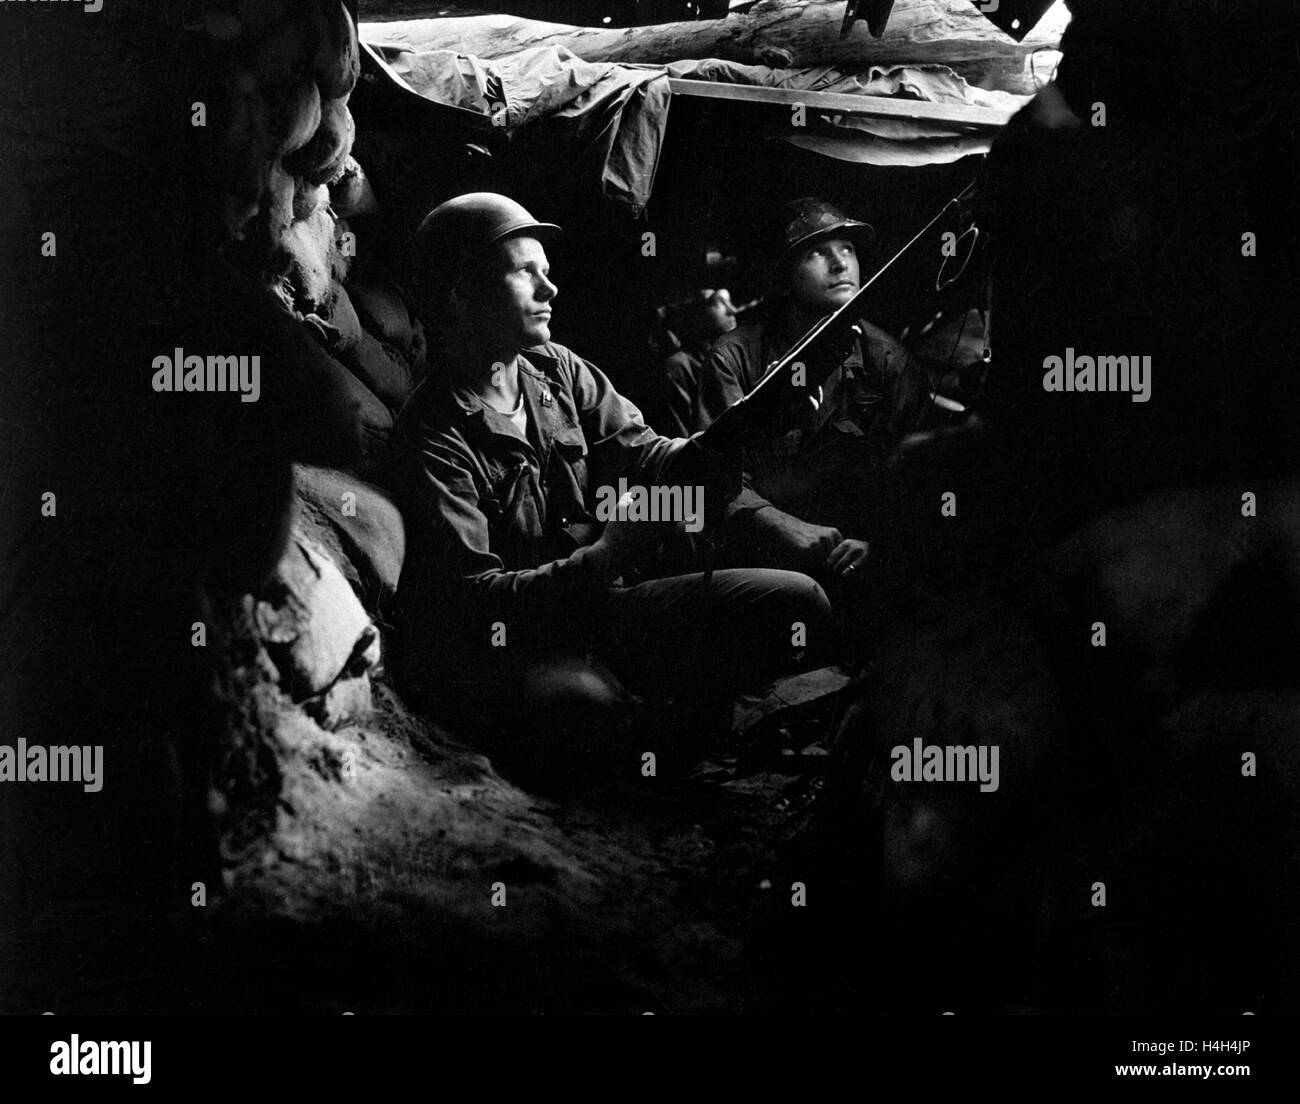 Stati Uniti Esercito di fanti con la ventisettesima Reggimento di Fanteria prendere la copertura nelle gallerie della frontline durante la battaglia di Heartbreak Ridge nella guerra di Corea 10 Agosto 1952 in Corea. Foto Stock